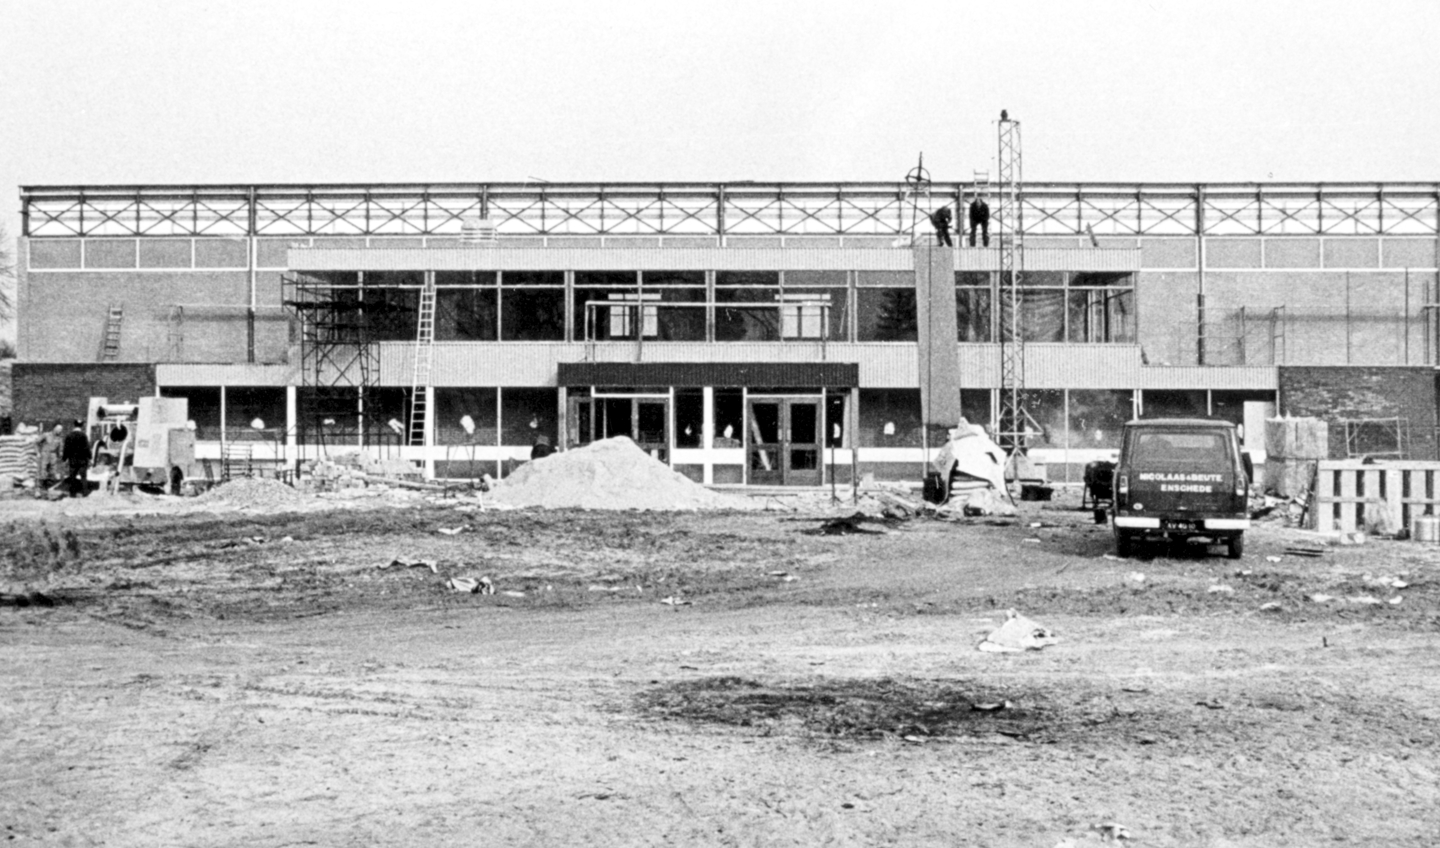 Beukendal 'onder constructie', 1968-'69, deze seriebouw was binnen een jaar gereed.